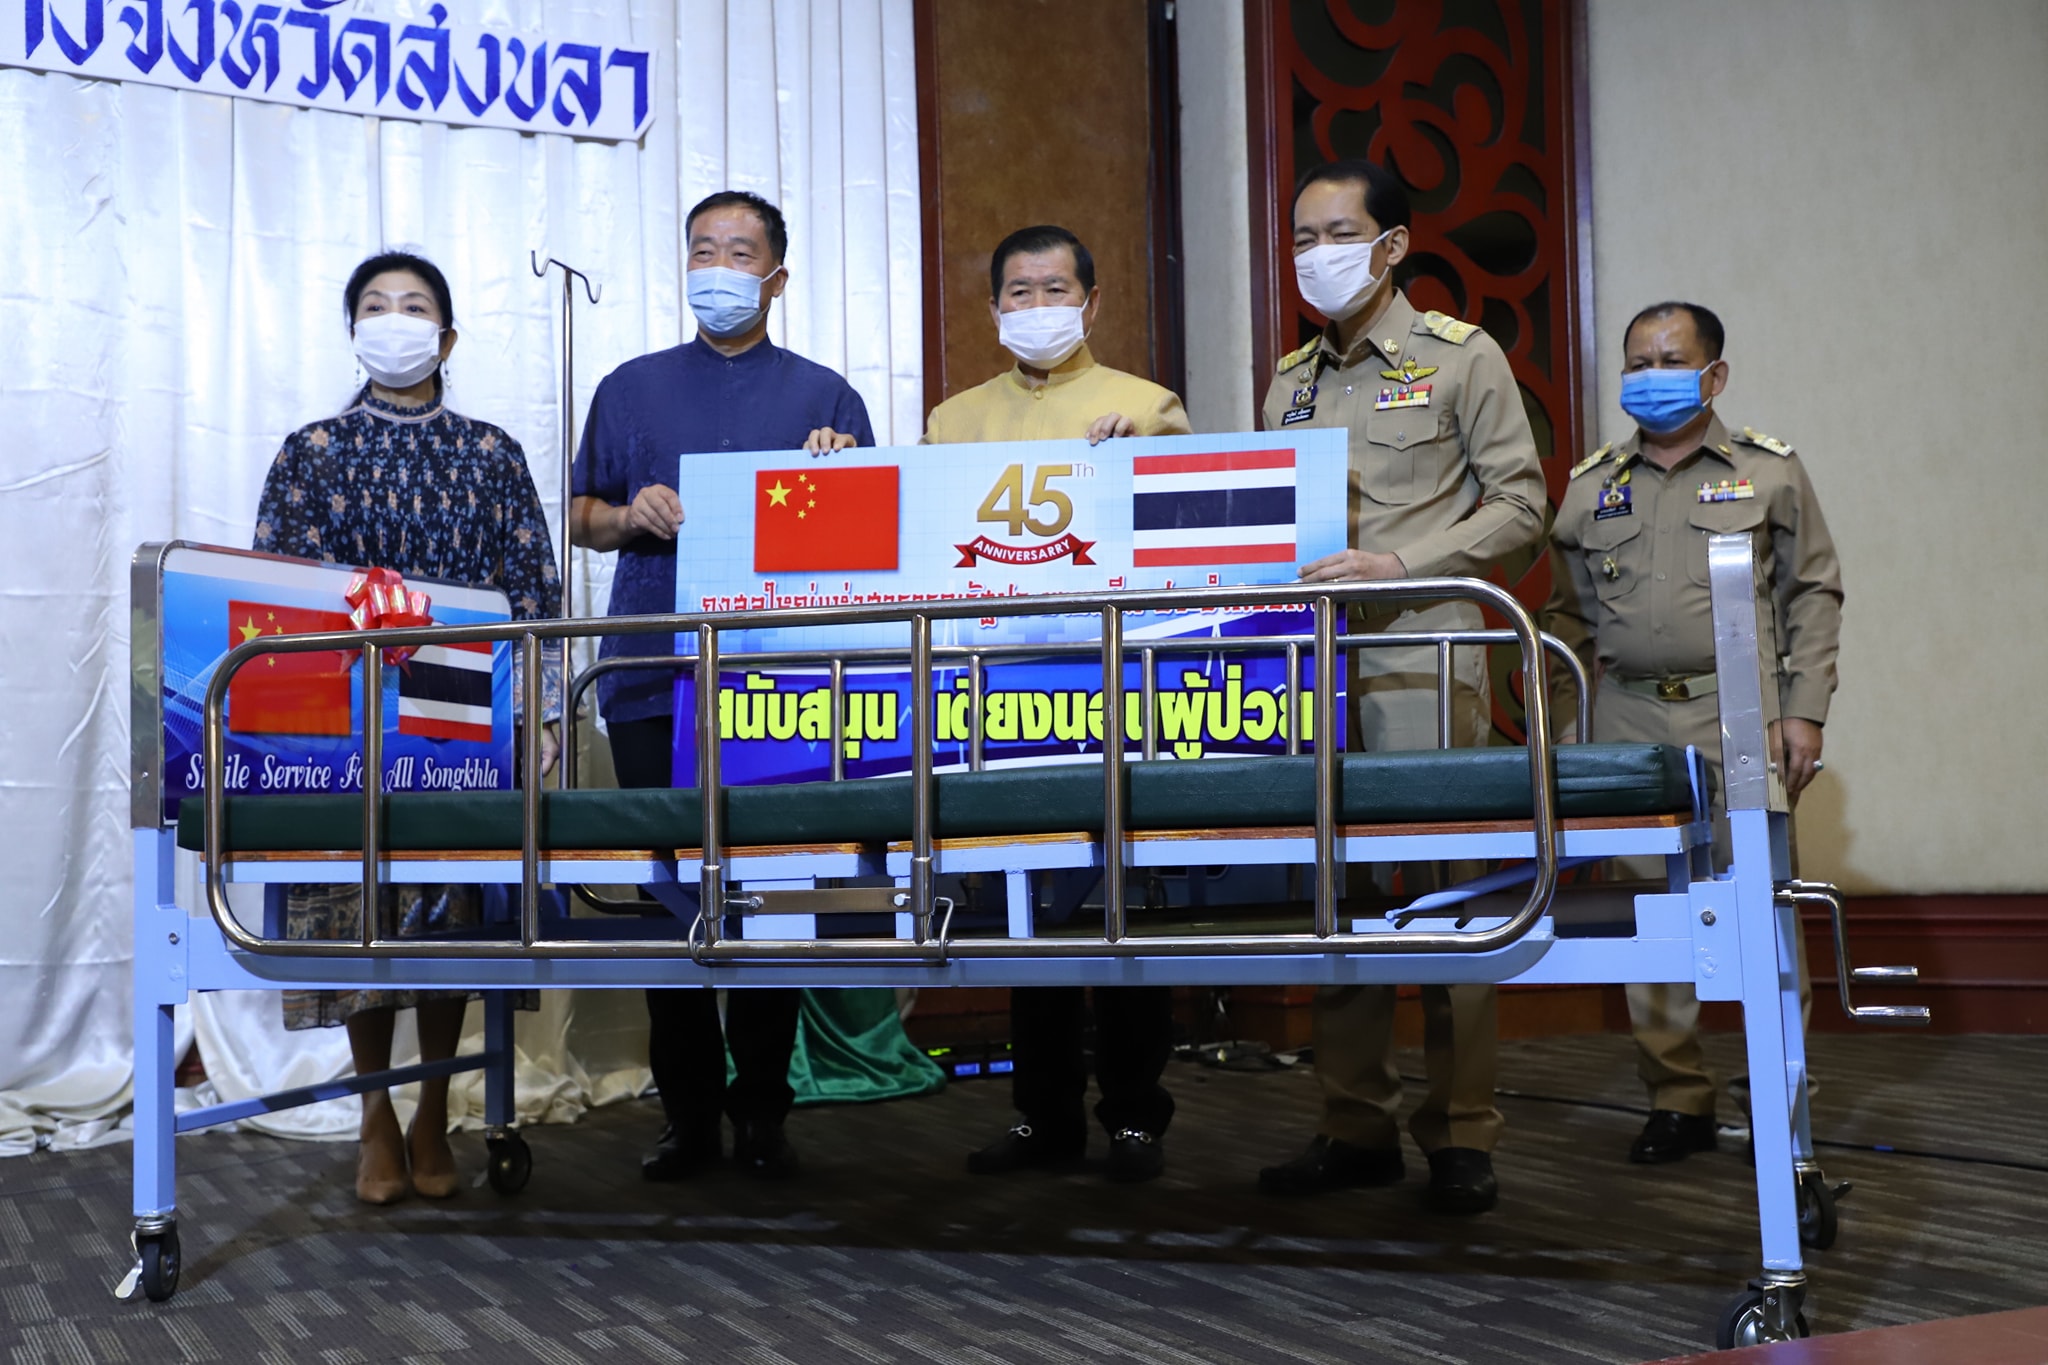 วันที่ 28 ก.ย.63 นายนิพนธ์ บุญญามณี รัฐมนตรีช่วยว่าการกระทรวงมหาดไทย เป็นประธานเปิดการอบรมขับขี่ปลอดภัยในกลุ่ม